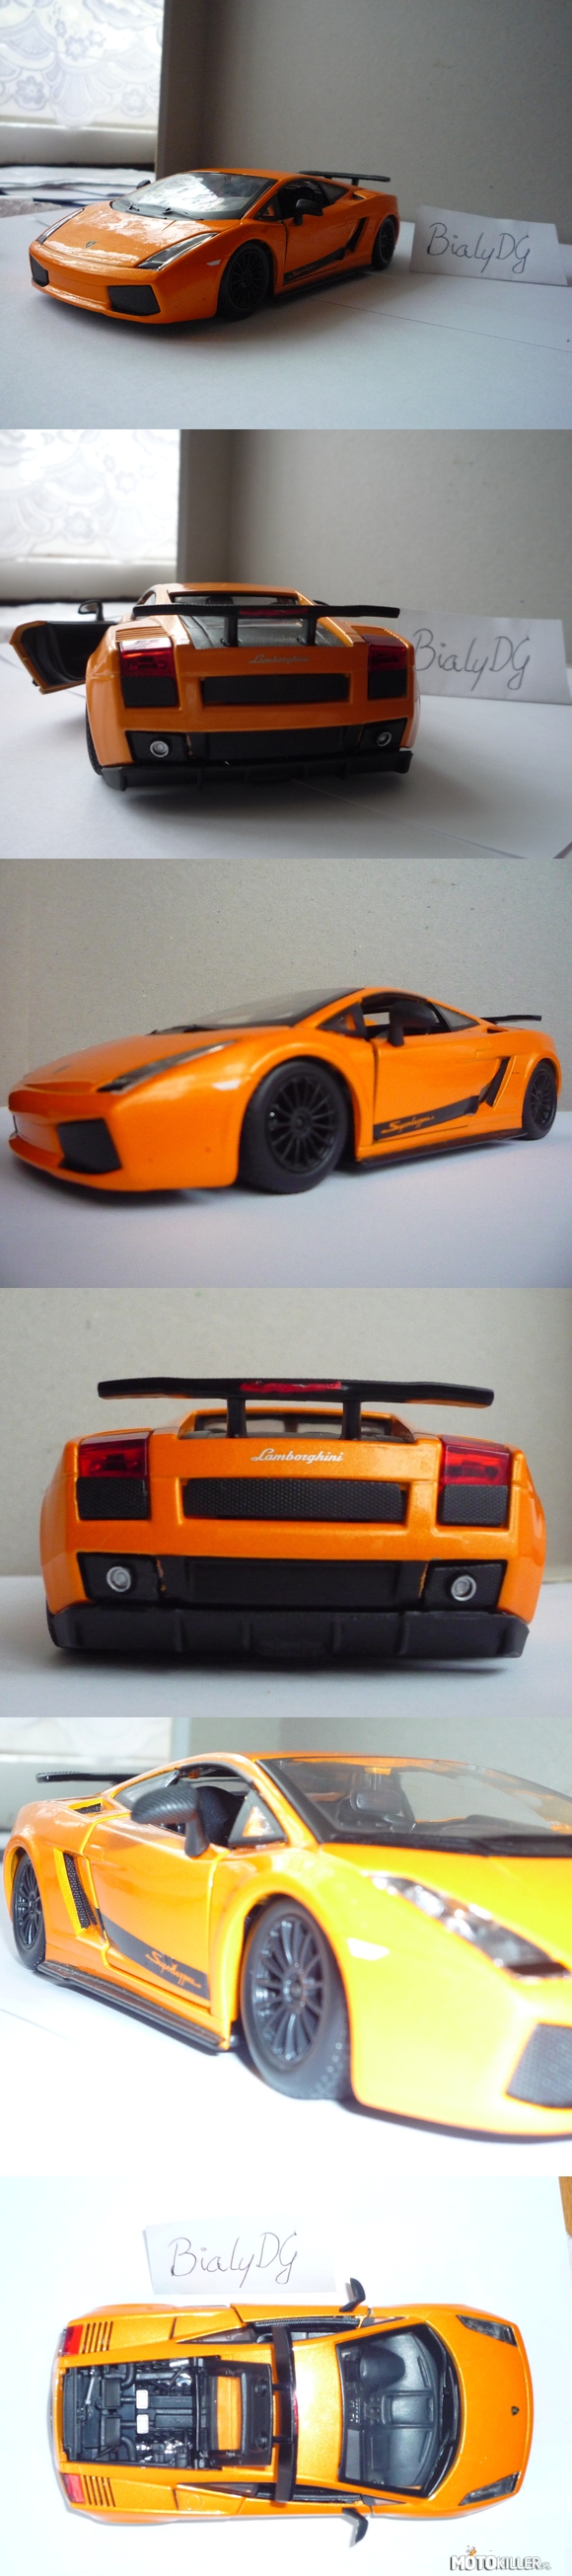 Modelarstwo: Gallardo – Lamborghini Gallardo Superleggera w skali 1:24 firmy Bburago. Co mogę powiedzieć o tym samochodzie... Wystarczy na niego spojrzeć. 